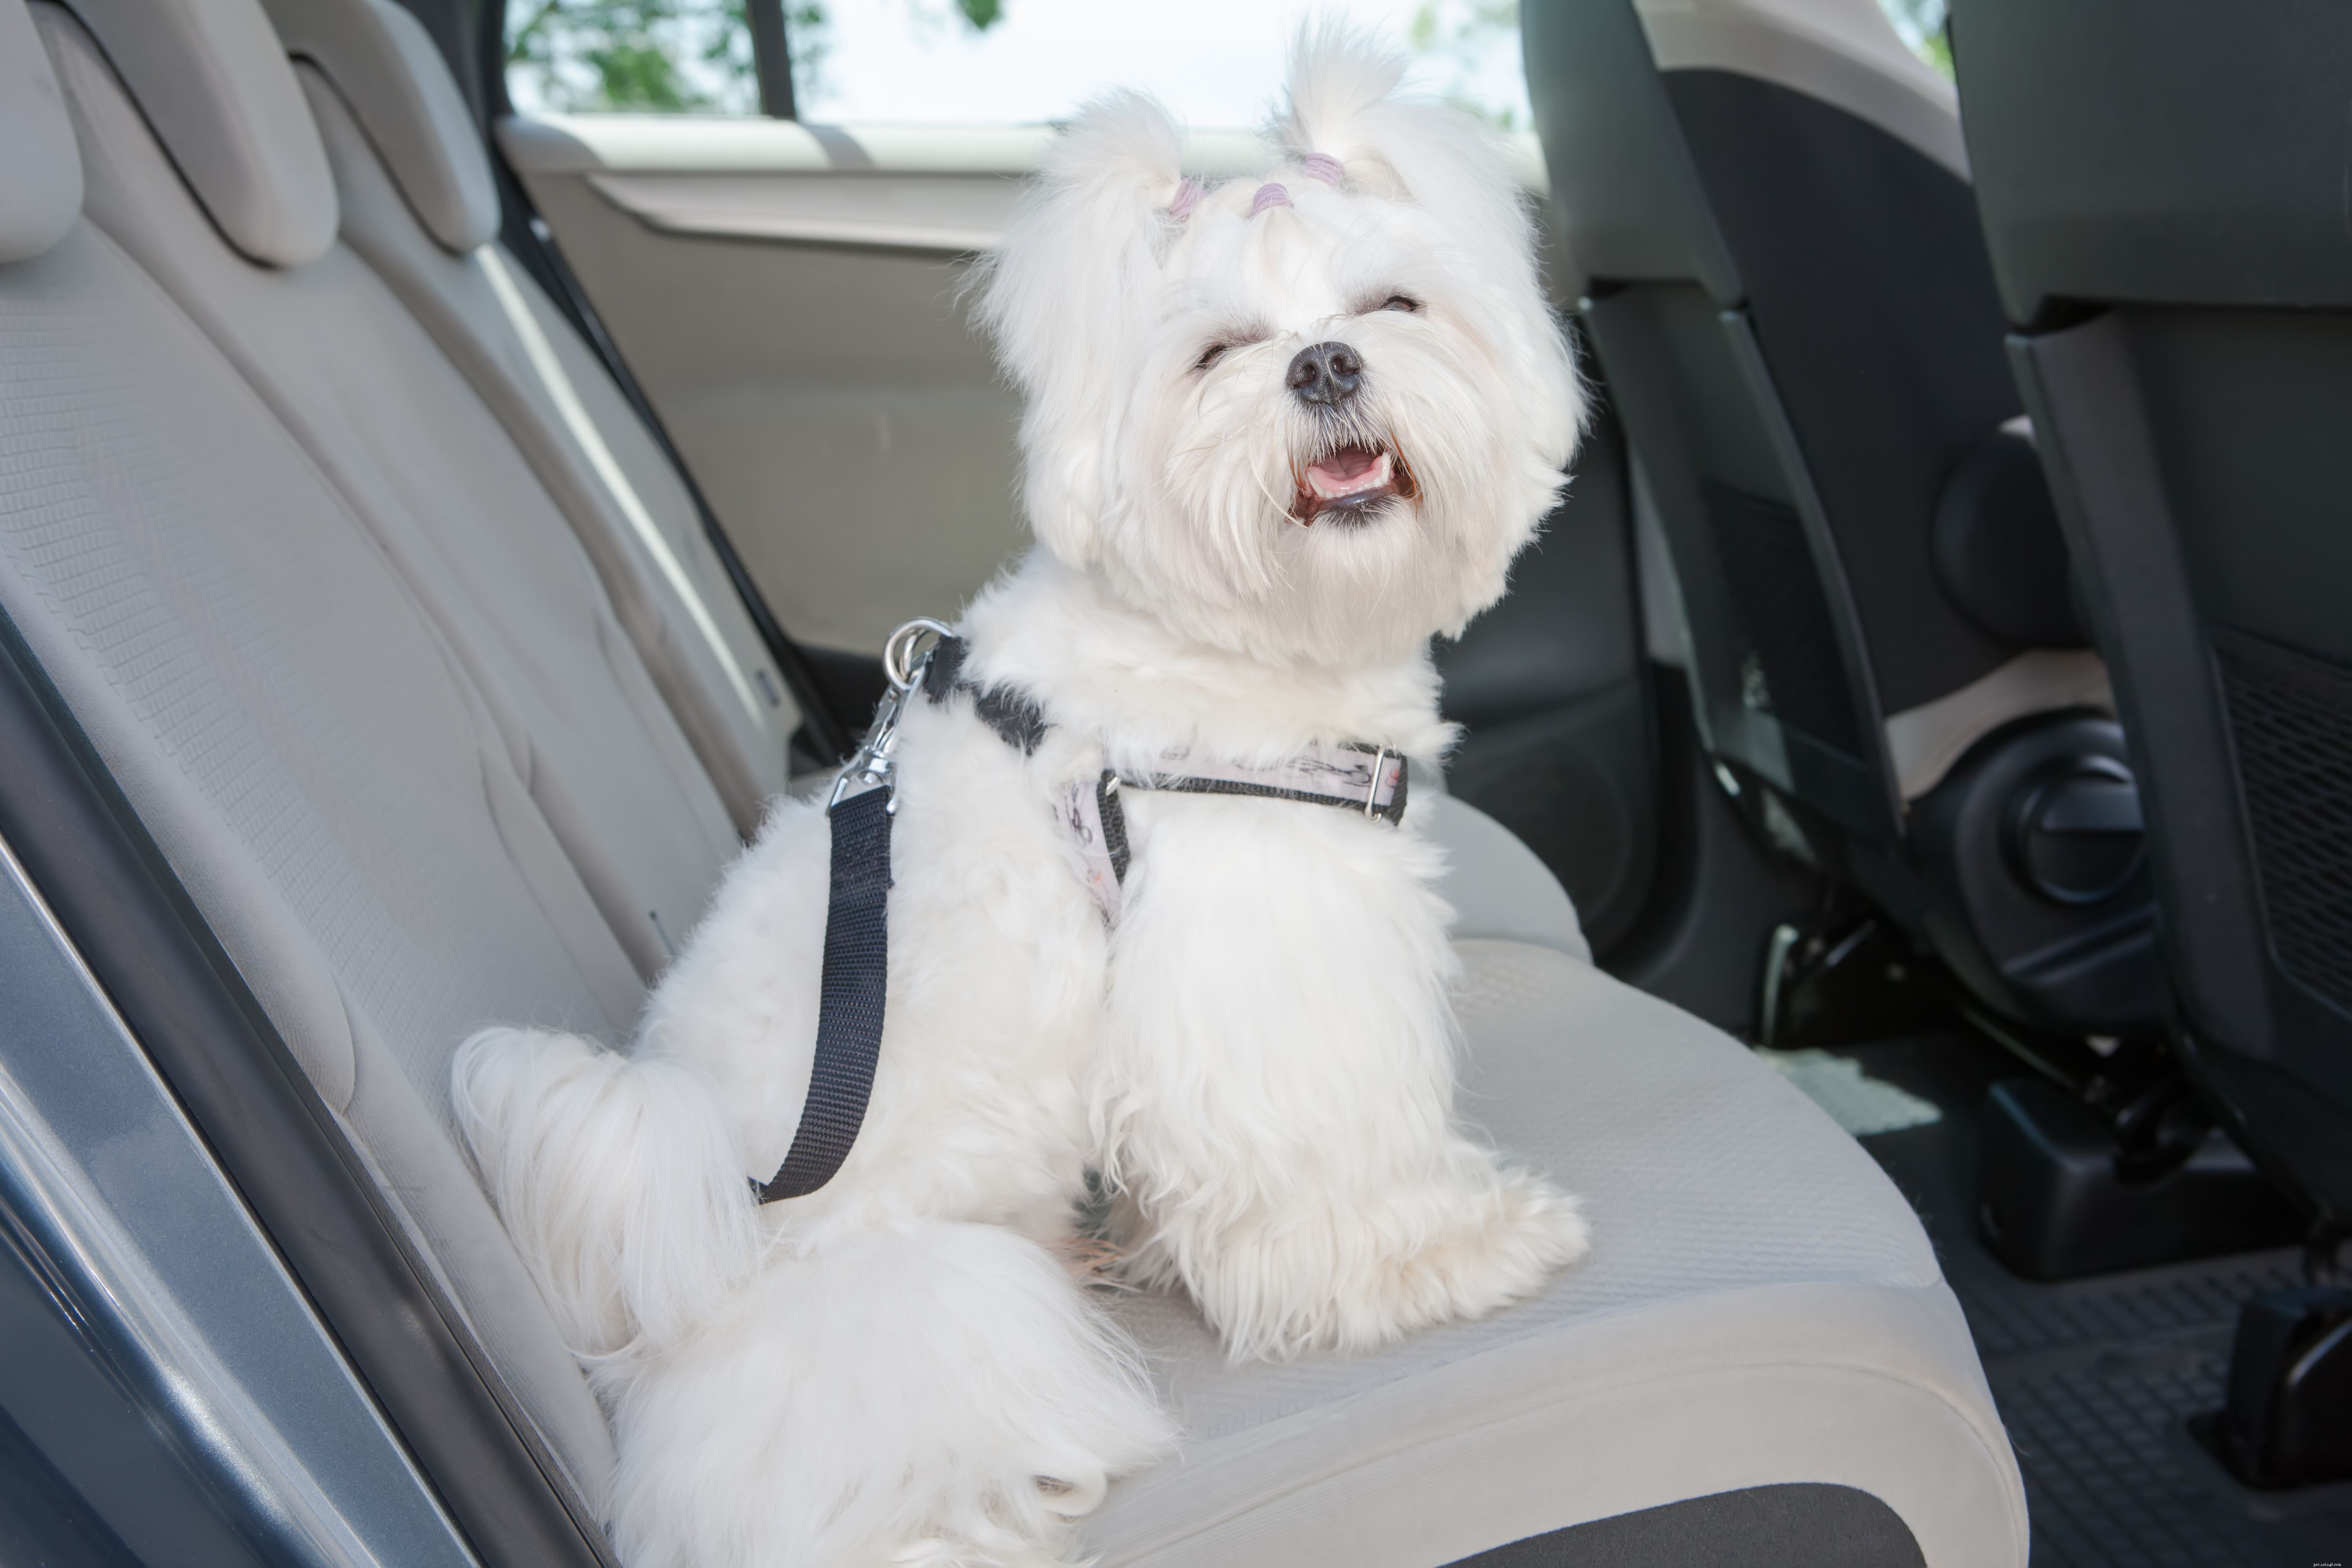 Melhor maneira de prender um cachorro no carro por segurança